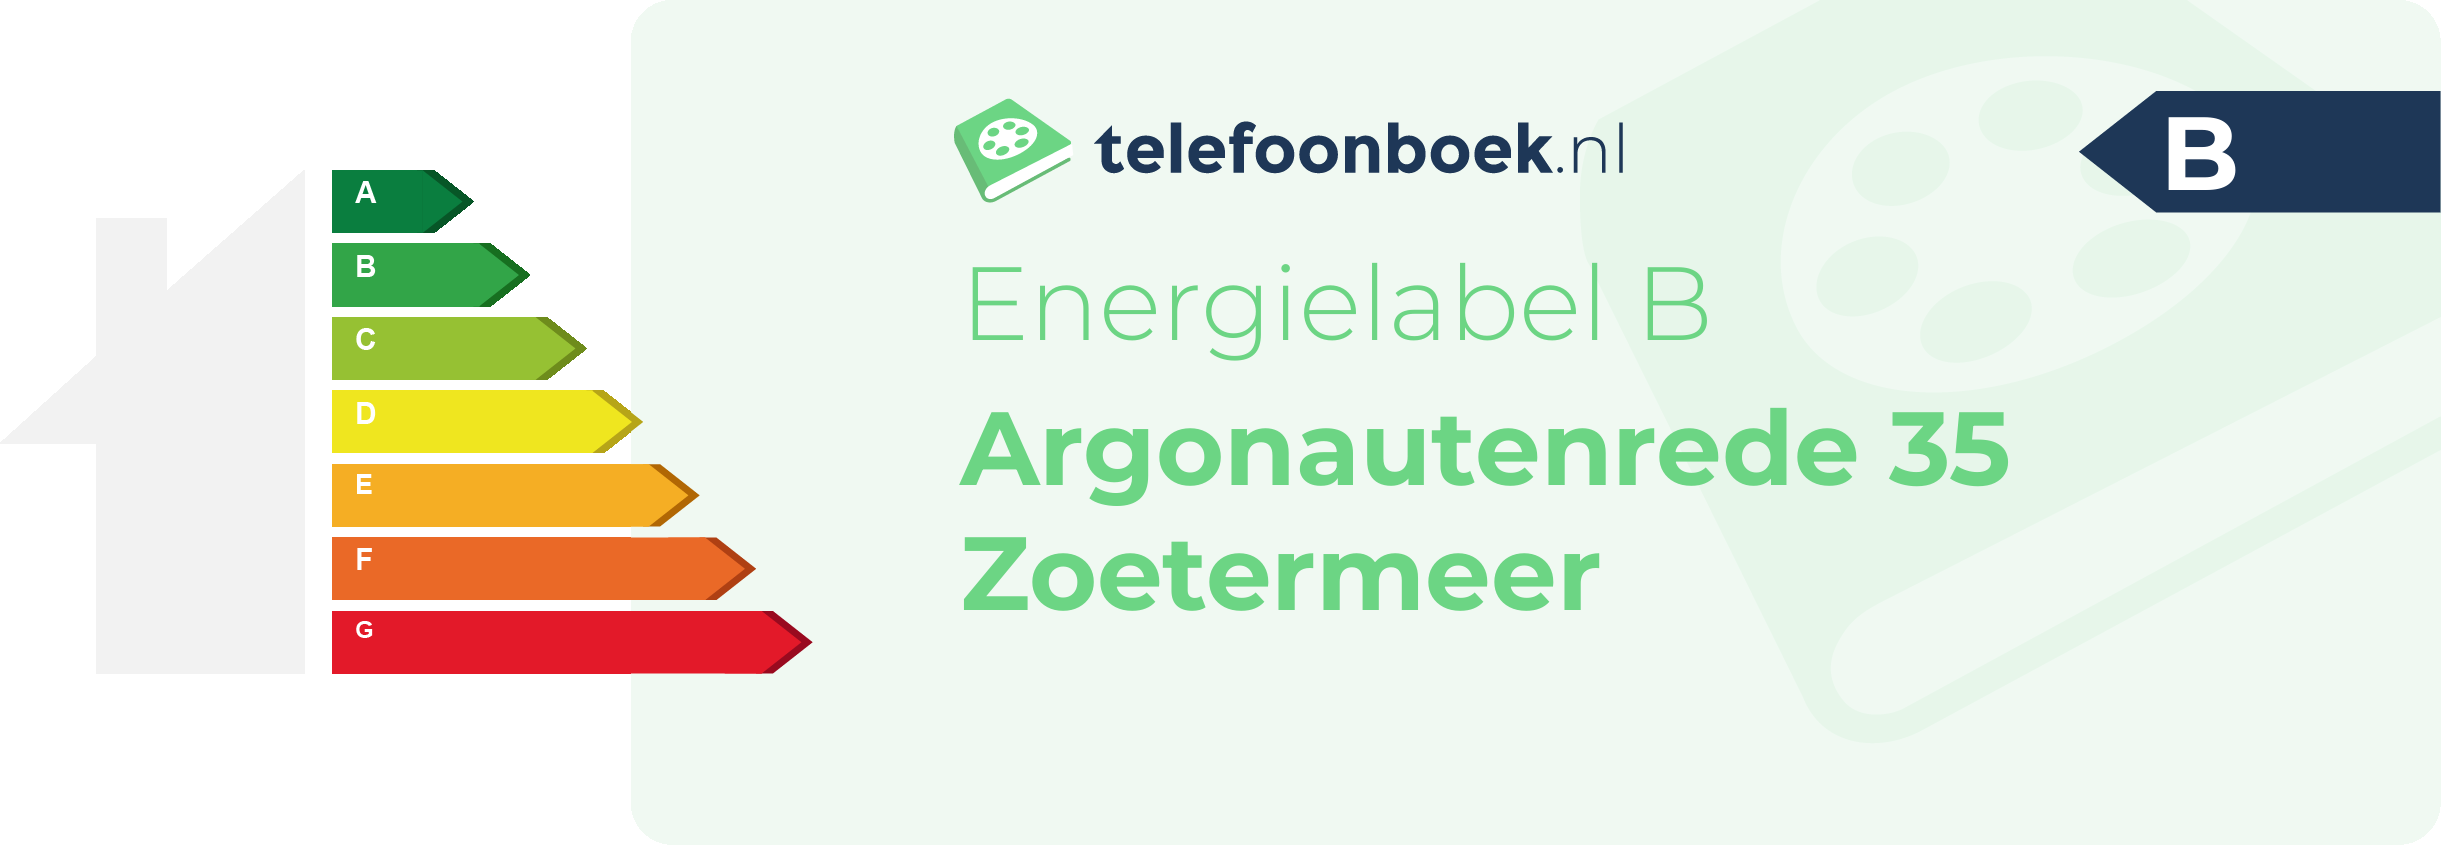 Energielabel Argonautenrede 35 Zoetermeer